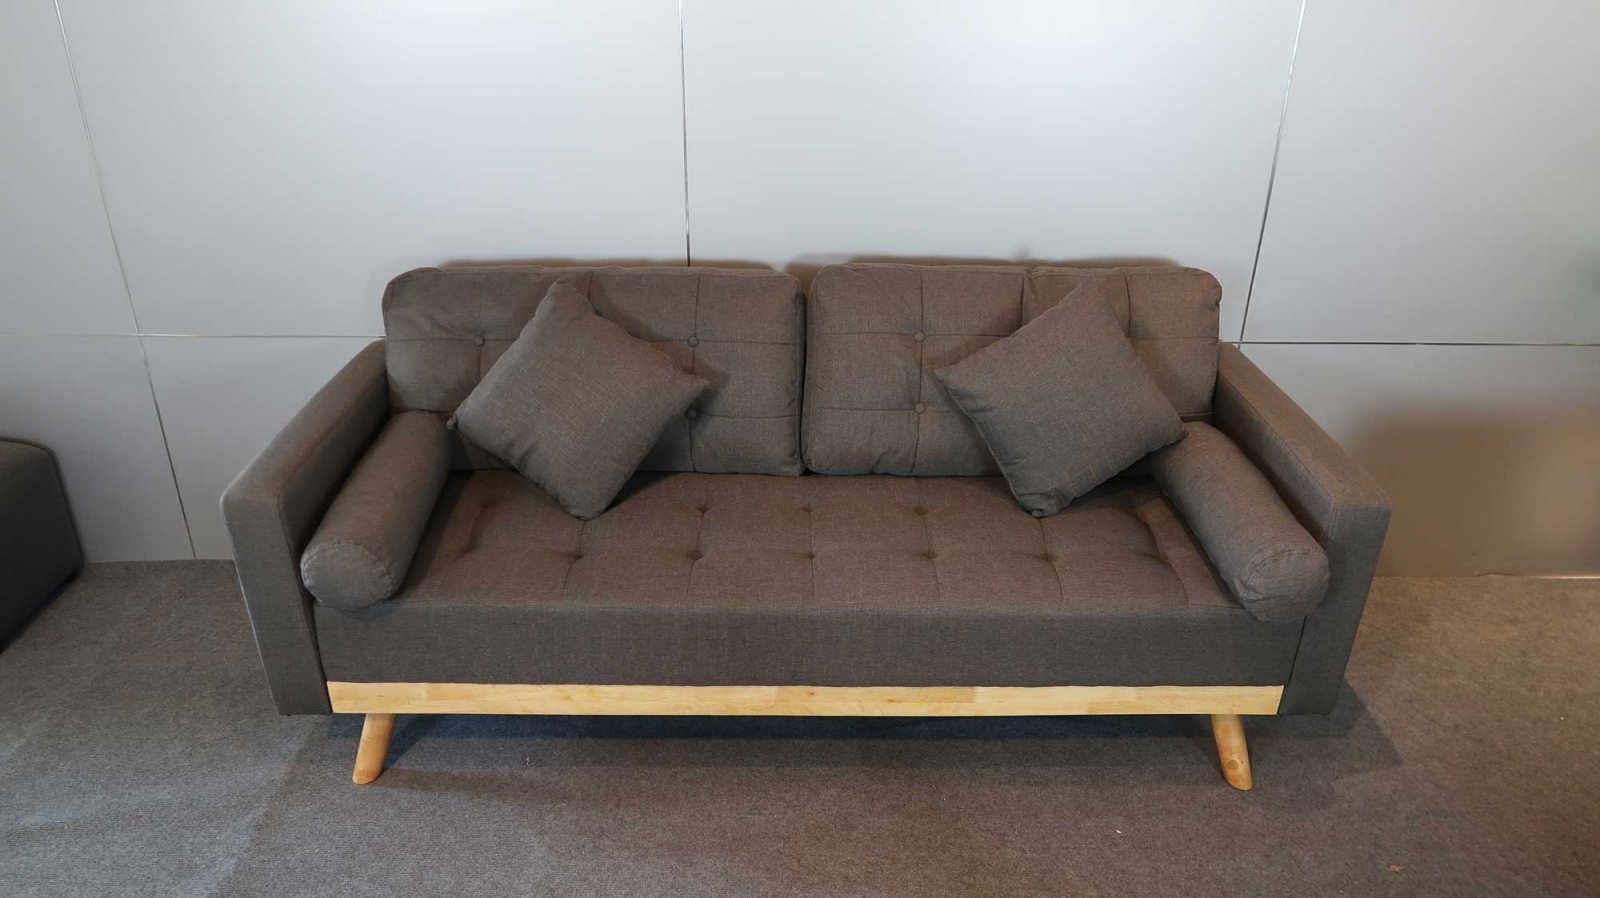 Có nên mua Ghế sofa khuyến mãi tại Tphcm?